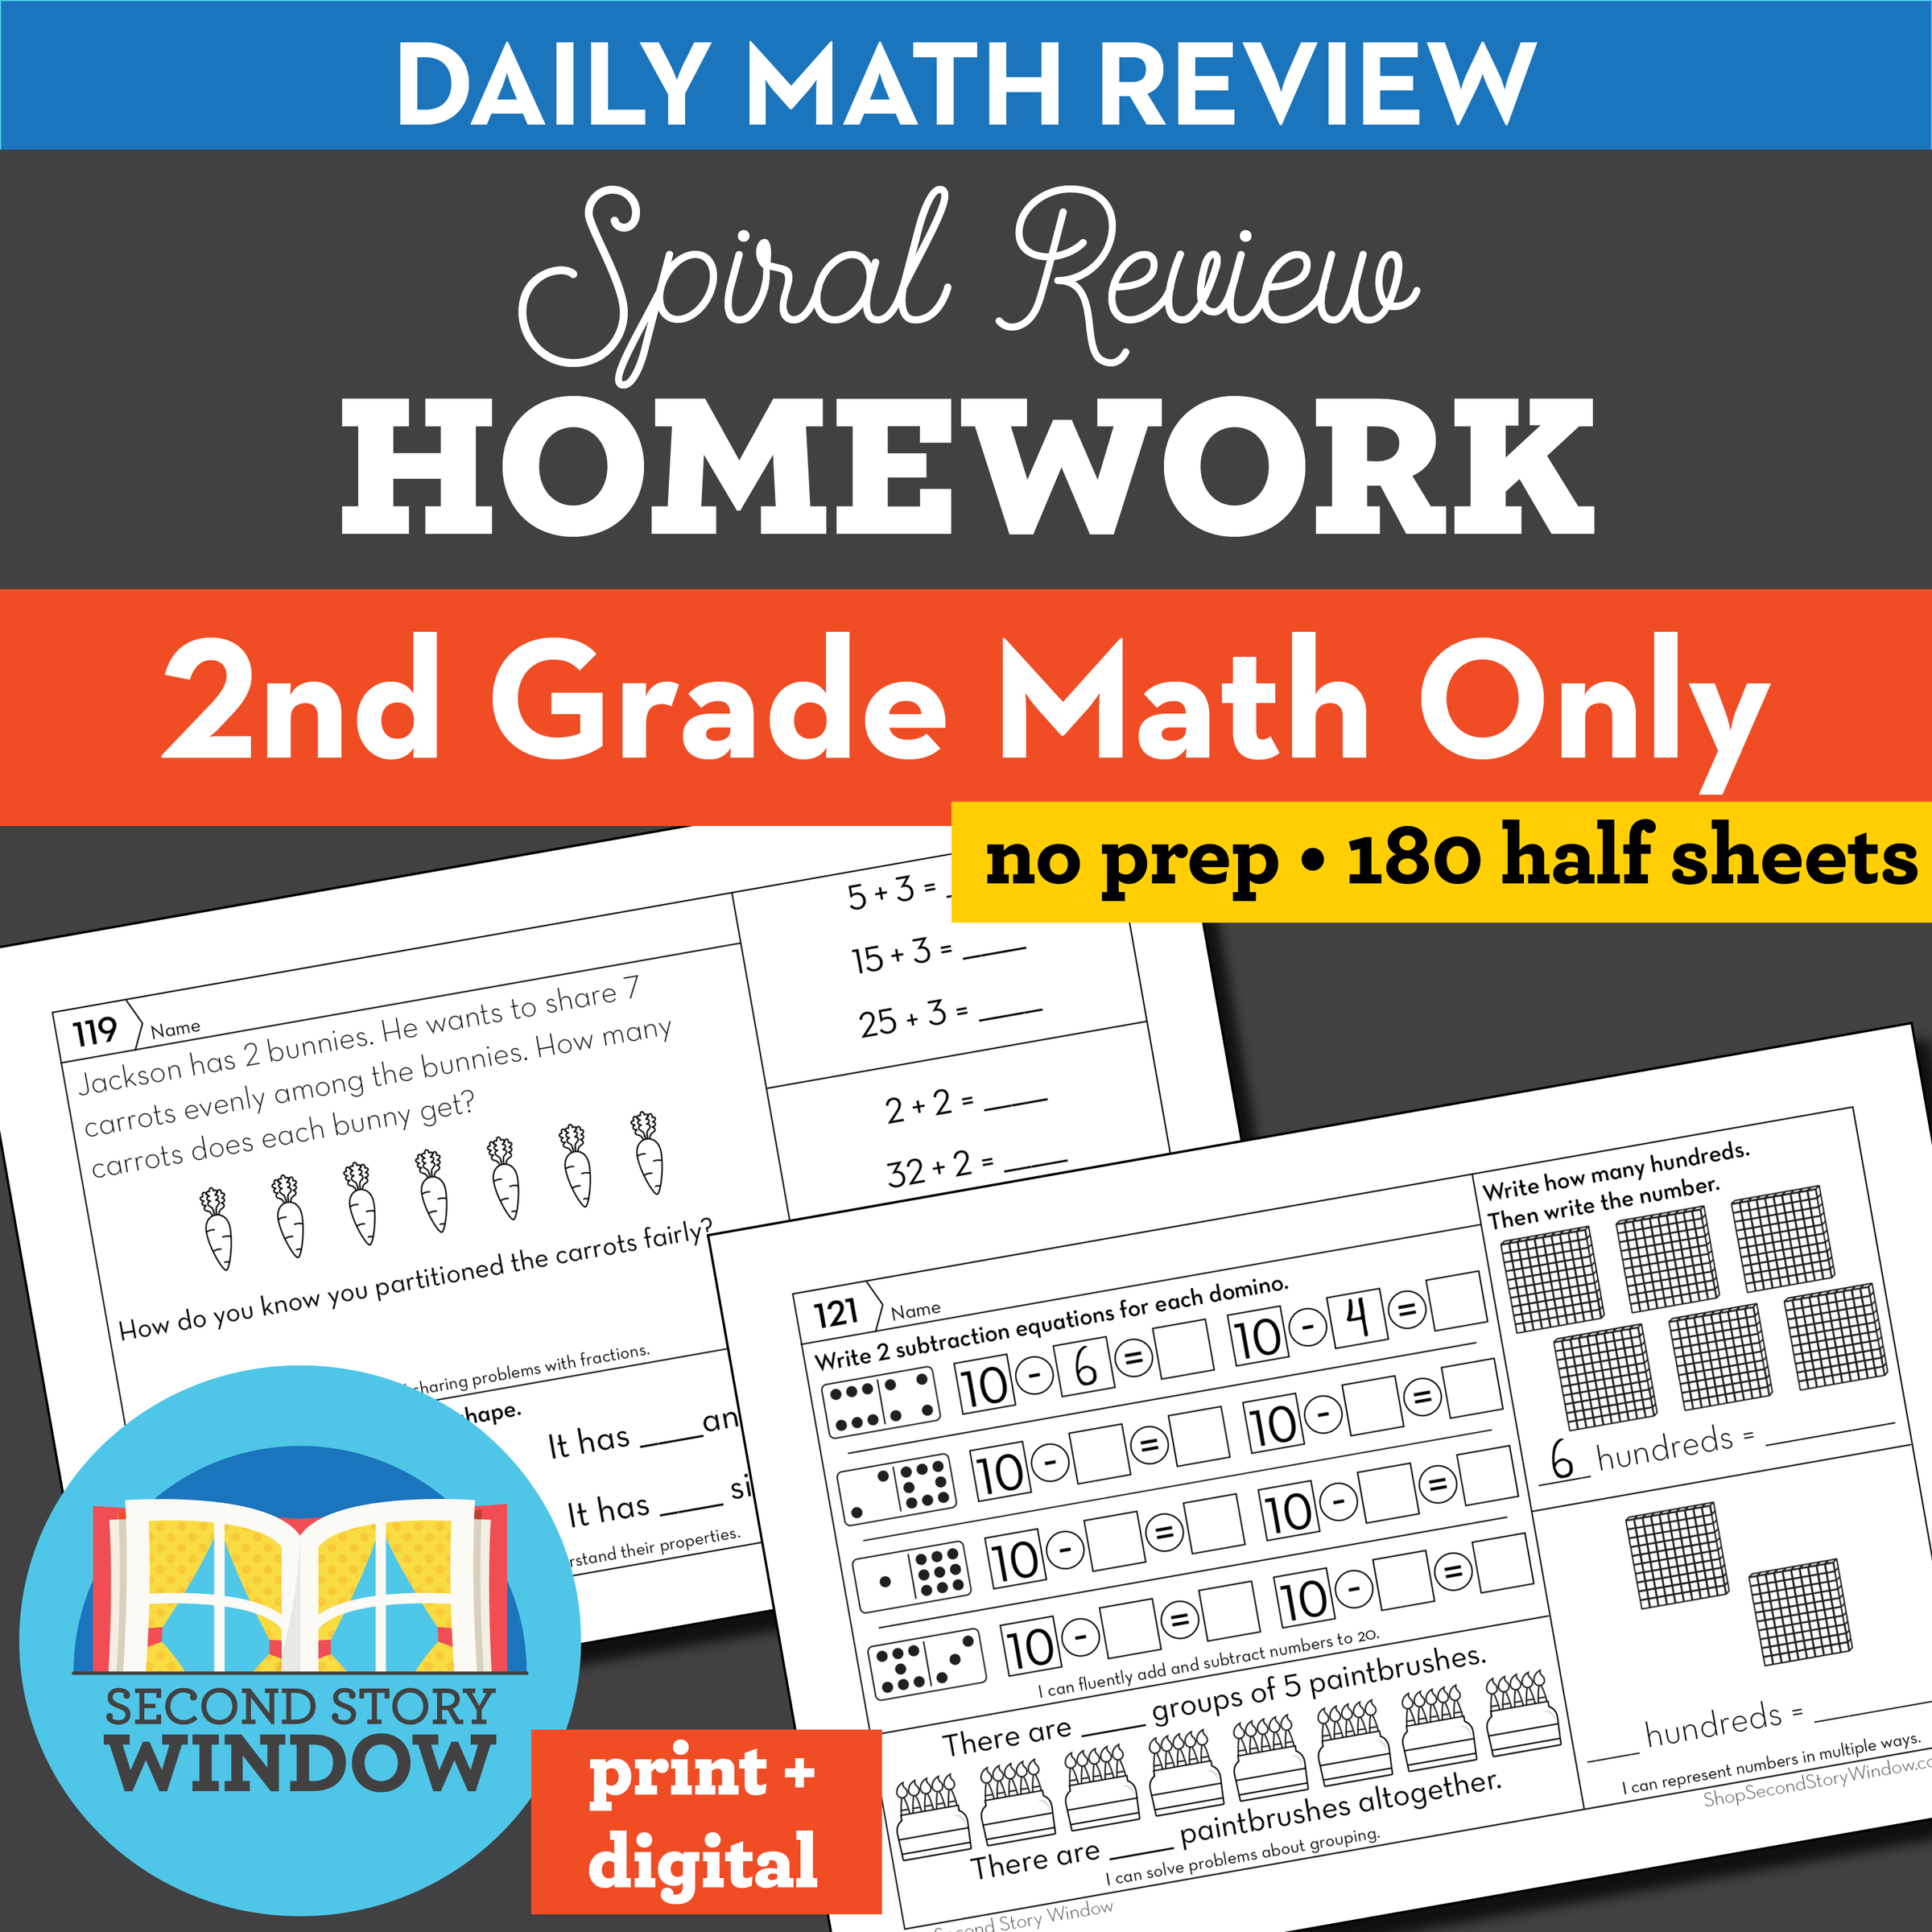 homework review 16